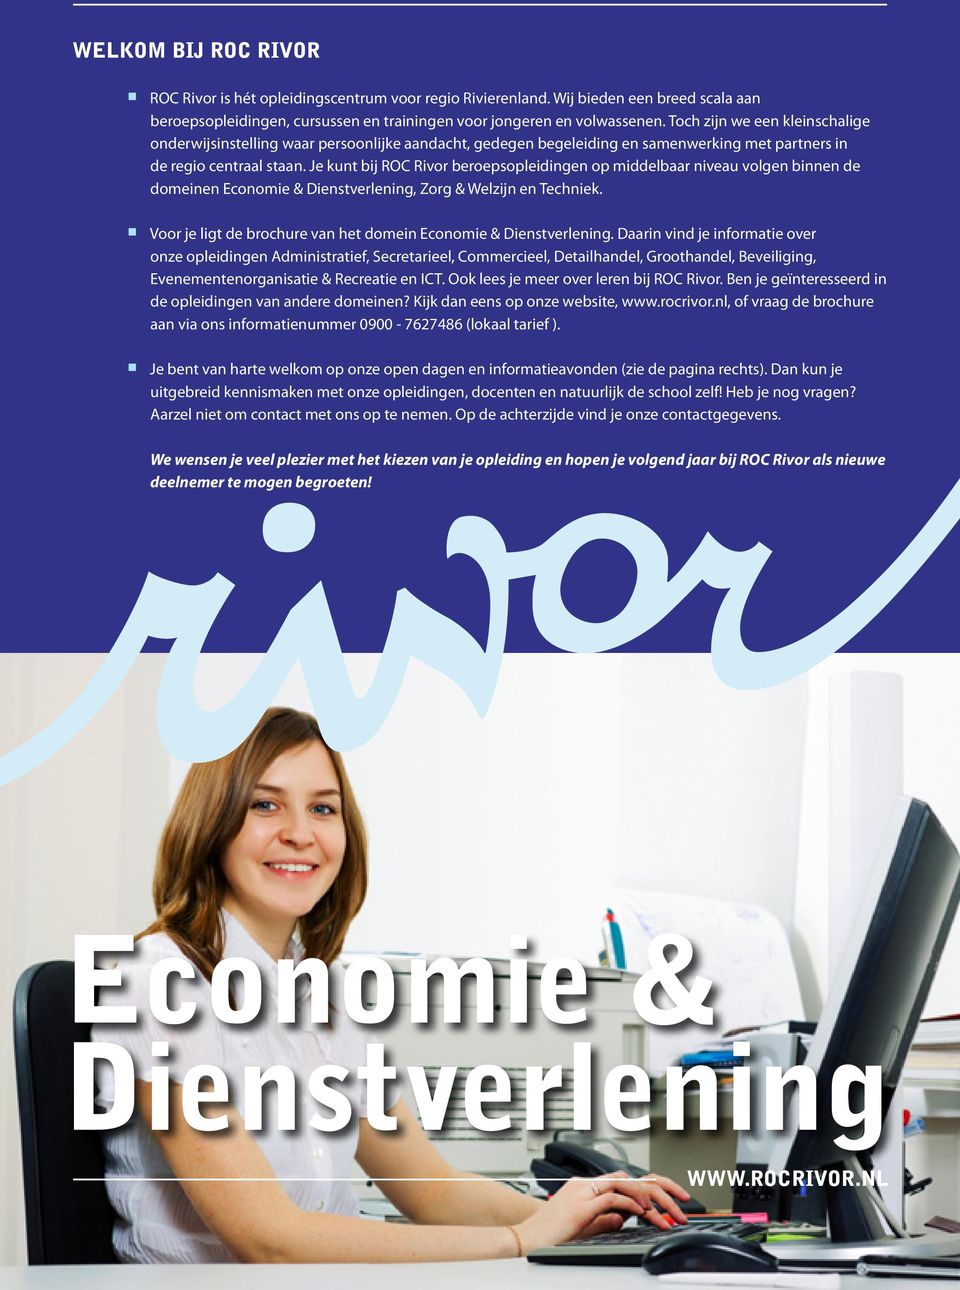 Je kunt bij ROC Rivor beroepsopleidingen op middelbaar niveau volgen binnen de domeinen Economie & Dienstverlening, Zorg & Welzijn en Techniek.